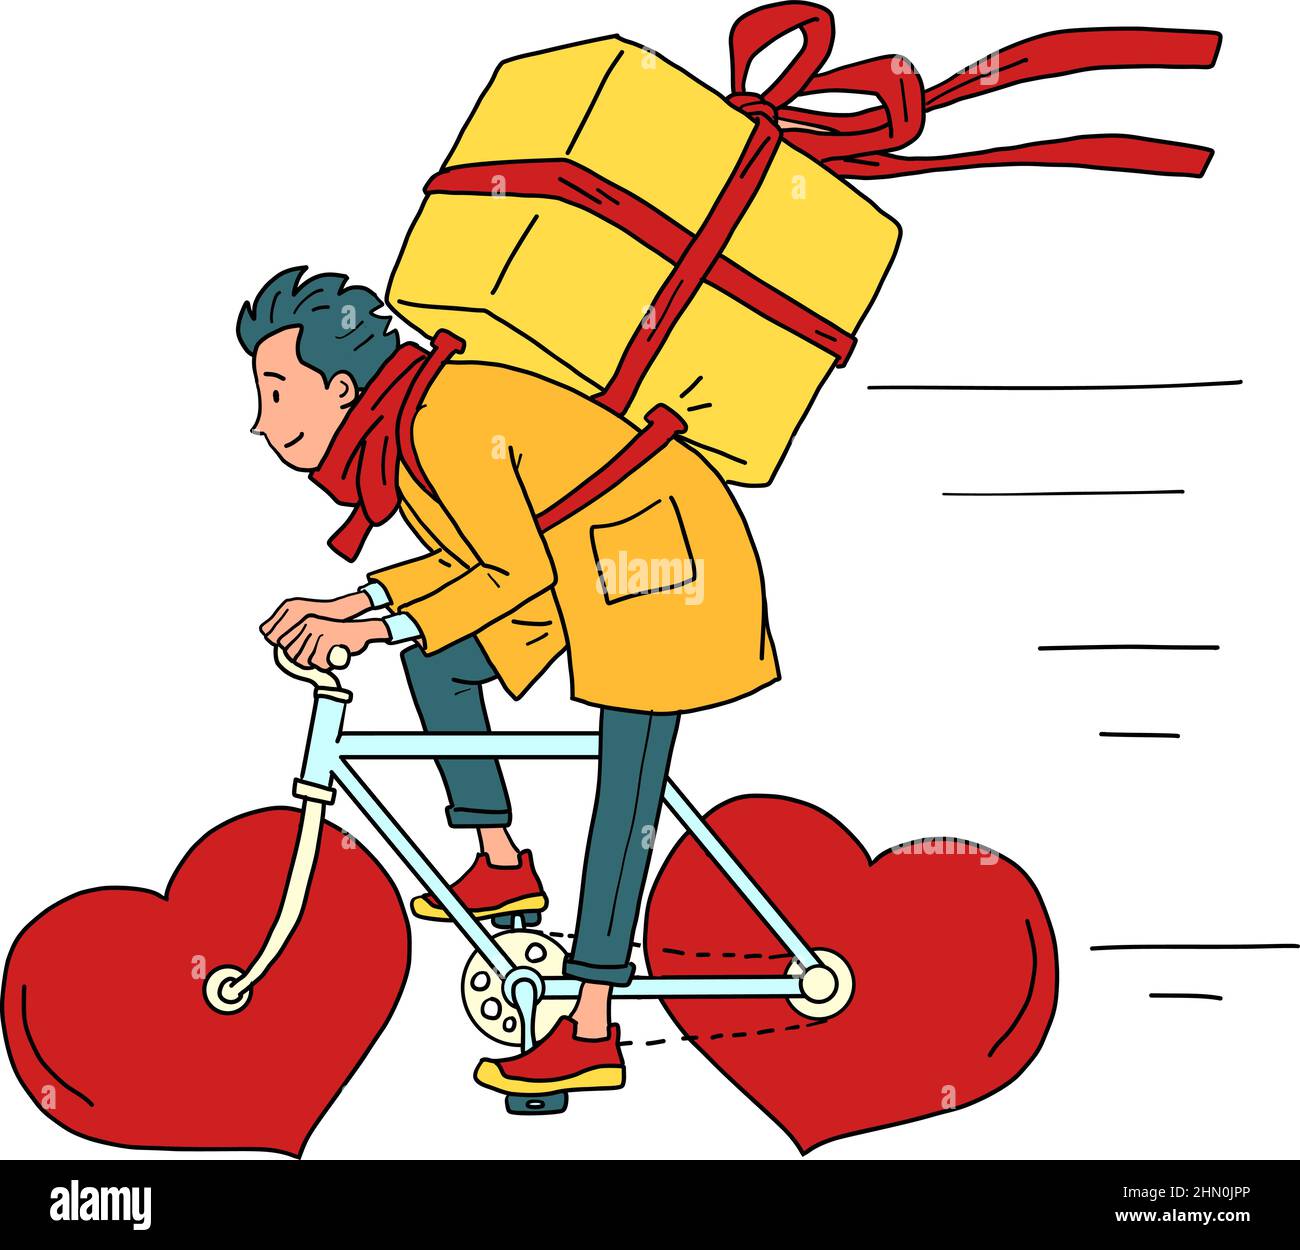 Lieferung von Lebensmitteln per Kurier auf einem Fahrrad, Valentinstag. Rotes Herz statt Räder Stock Vektor